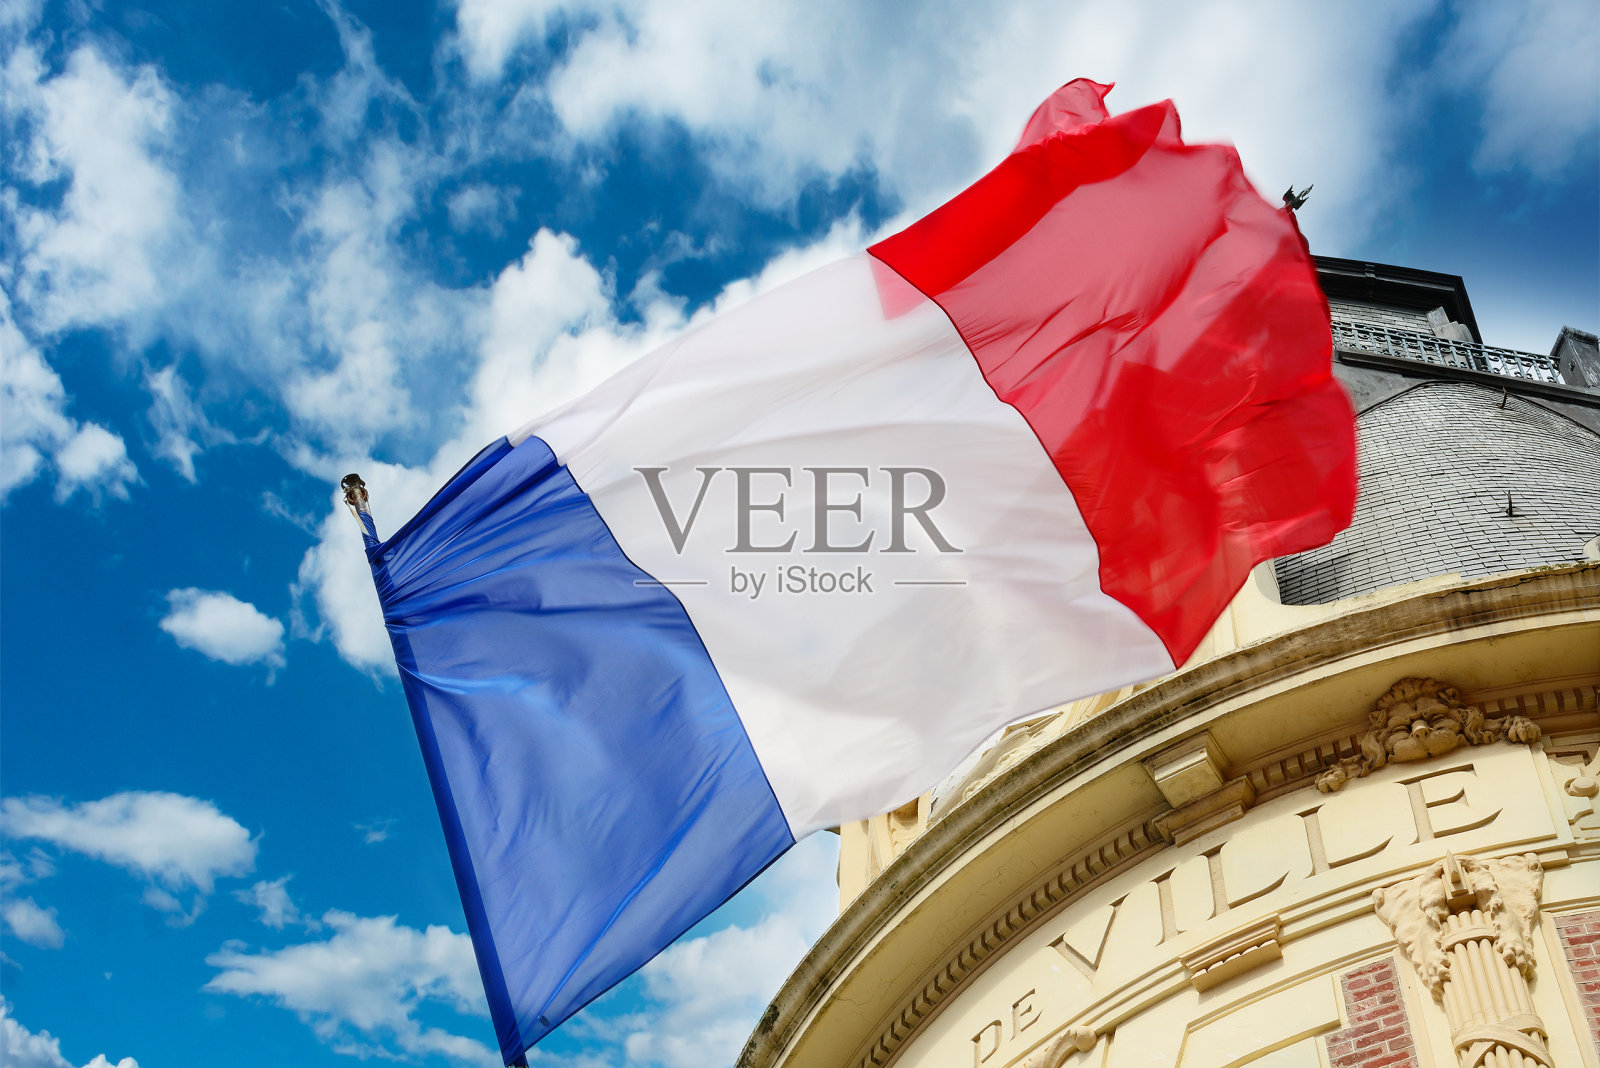 法国国旗在维尔酒店飘扬照片摄影图片